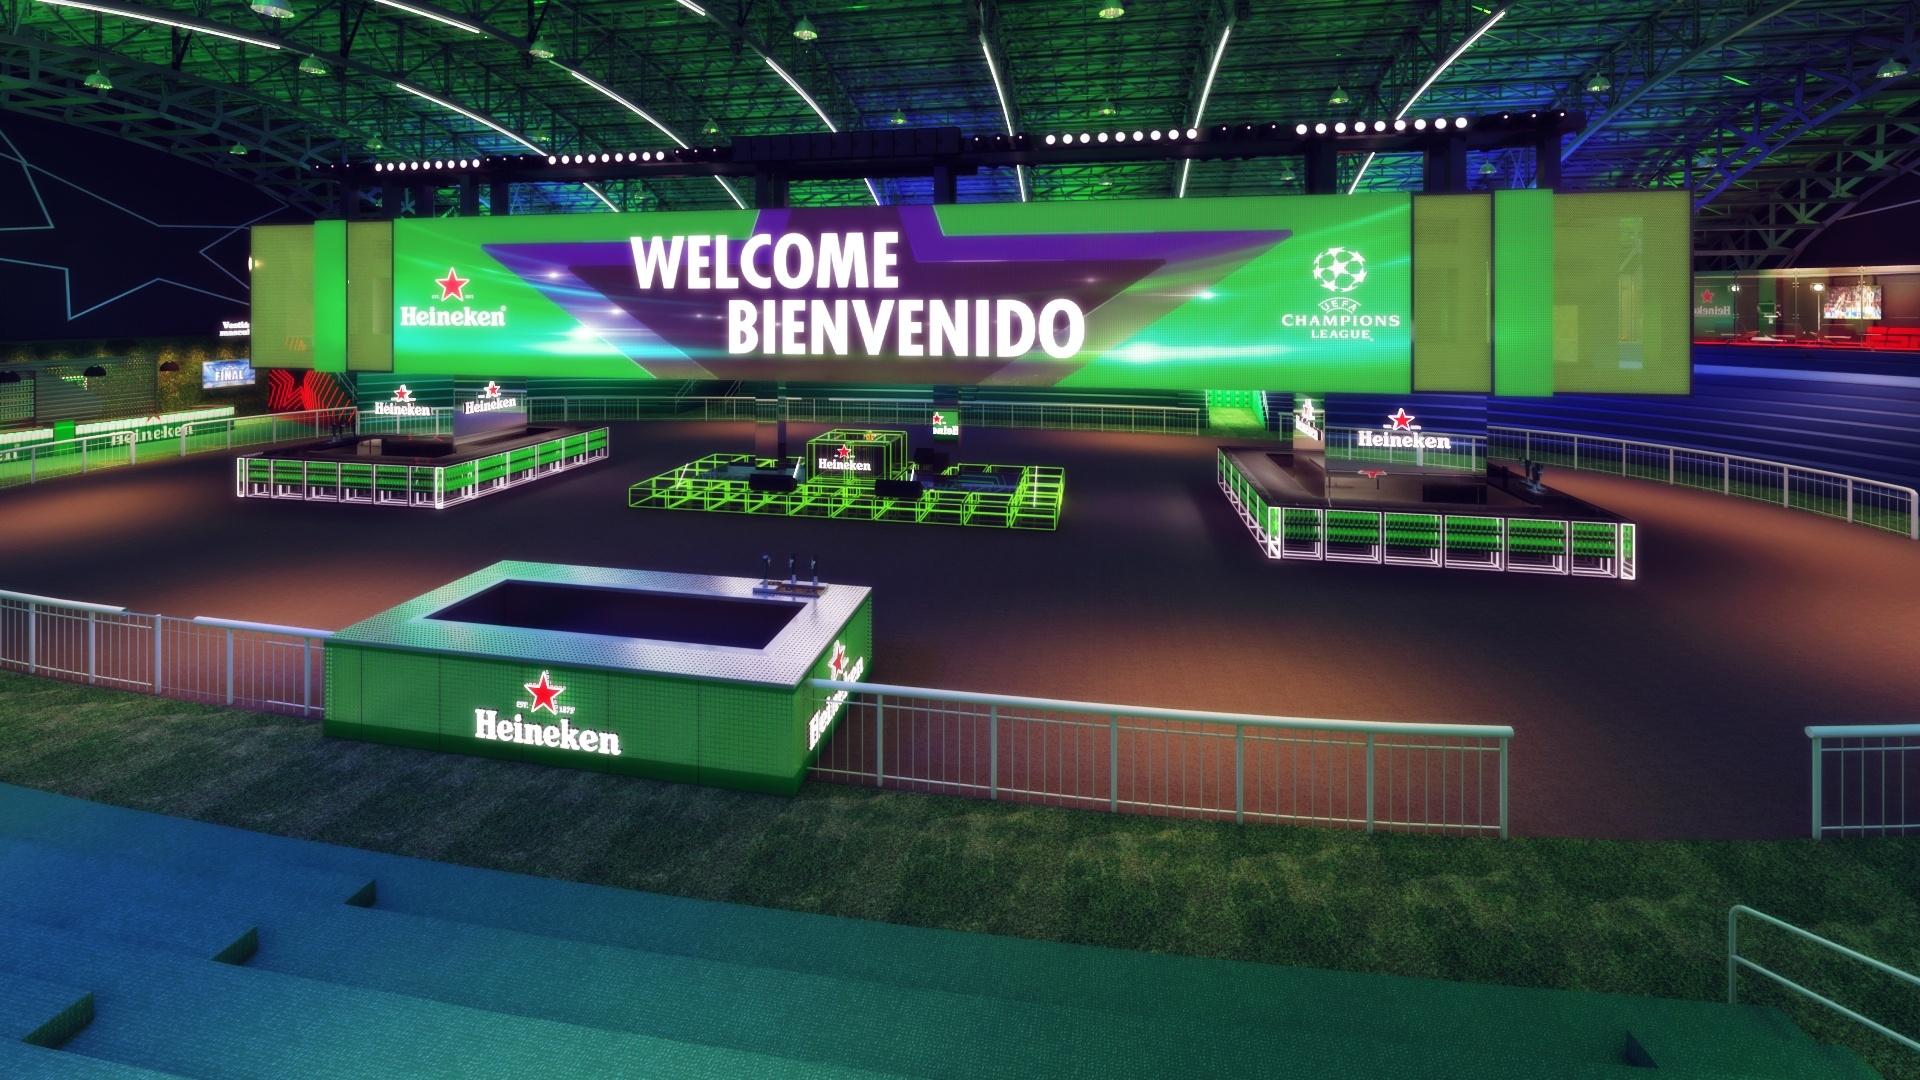 Heineken coloca torcedores em campo e jogadores na arquibancada, para  celebrar a UEFA Champions League Final - APP Brasil